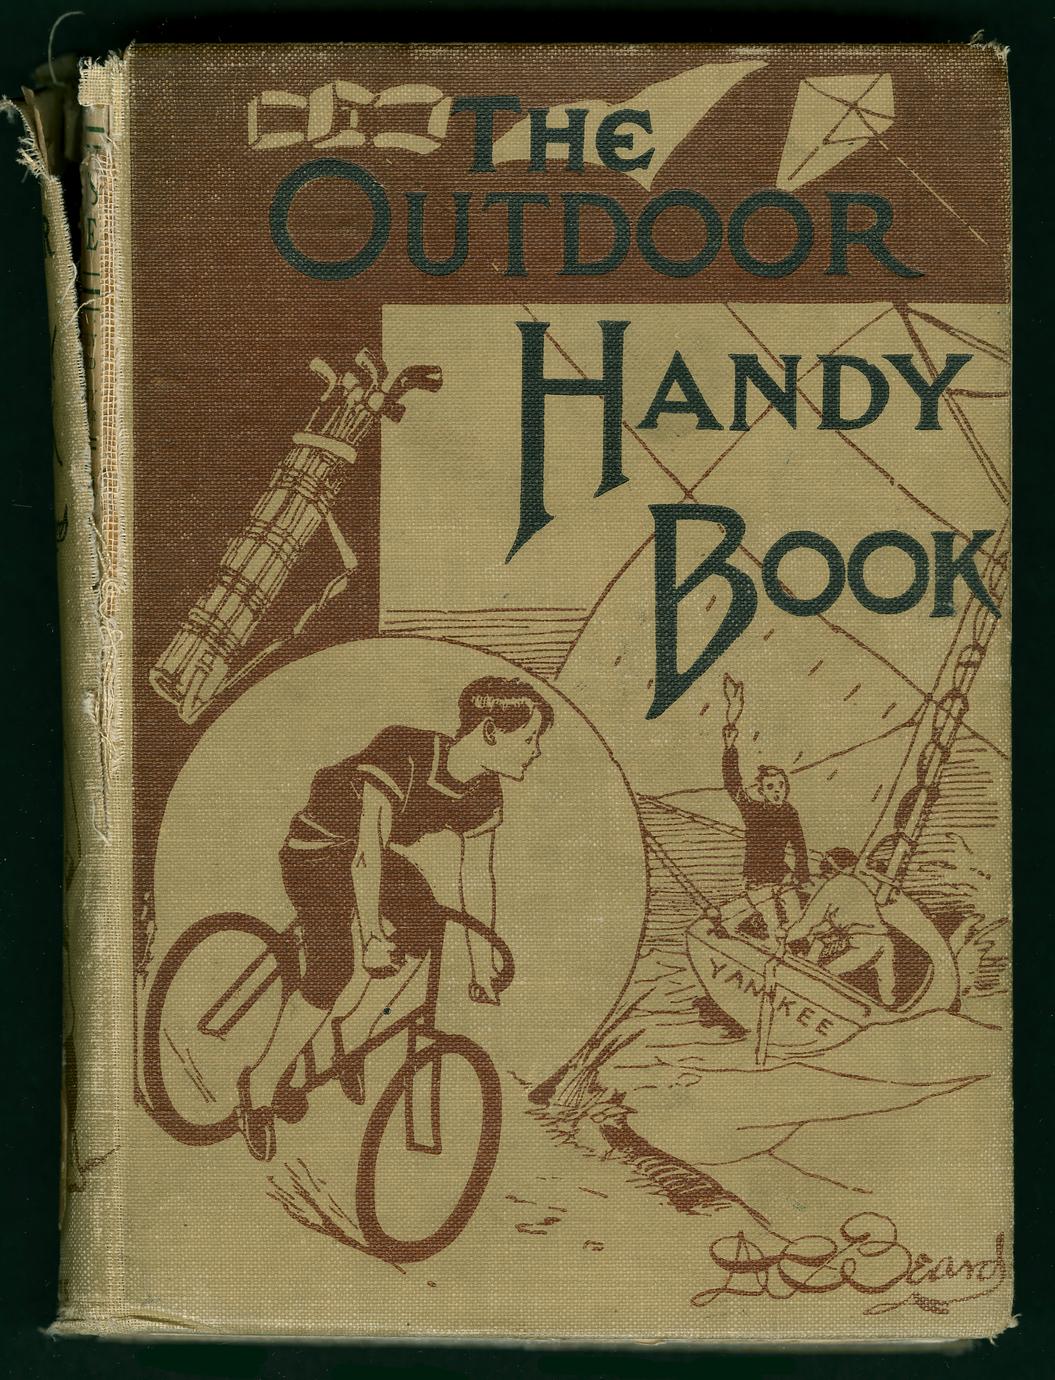 The outdoor handy book (1 of 2)